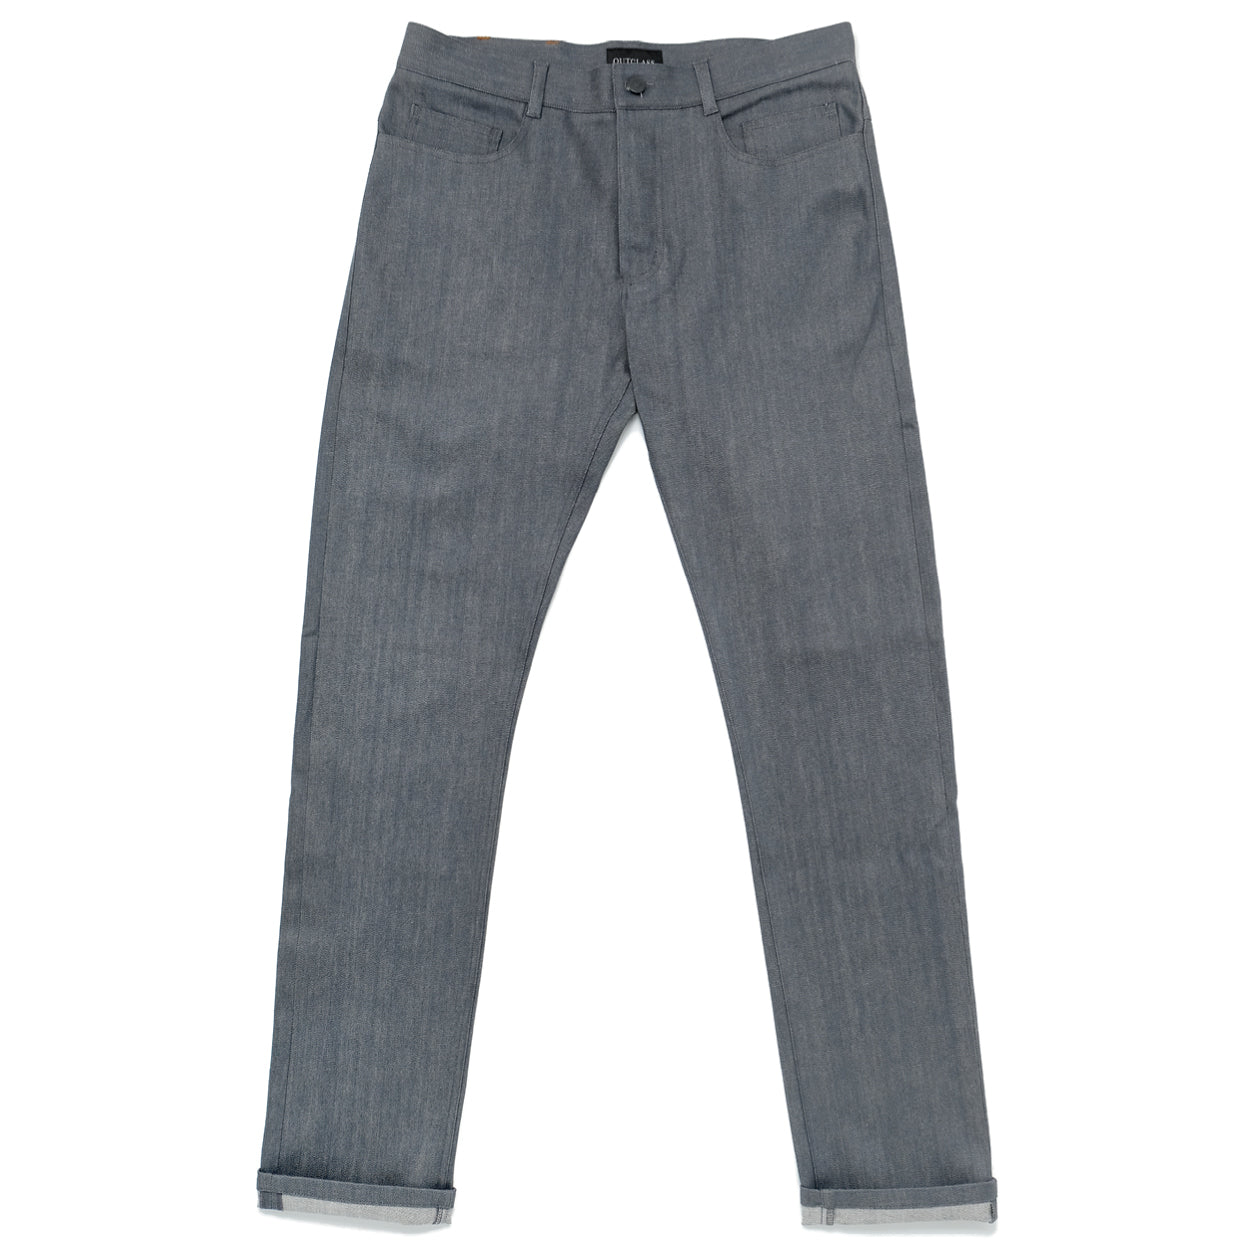 Grey Denim Jeans V2 – Outclass